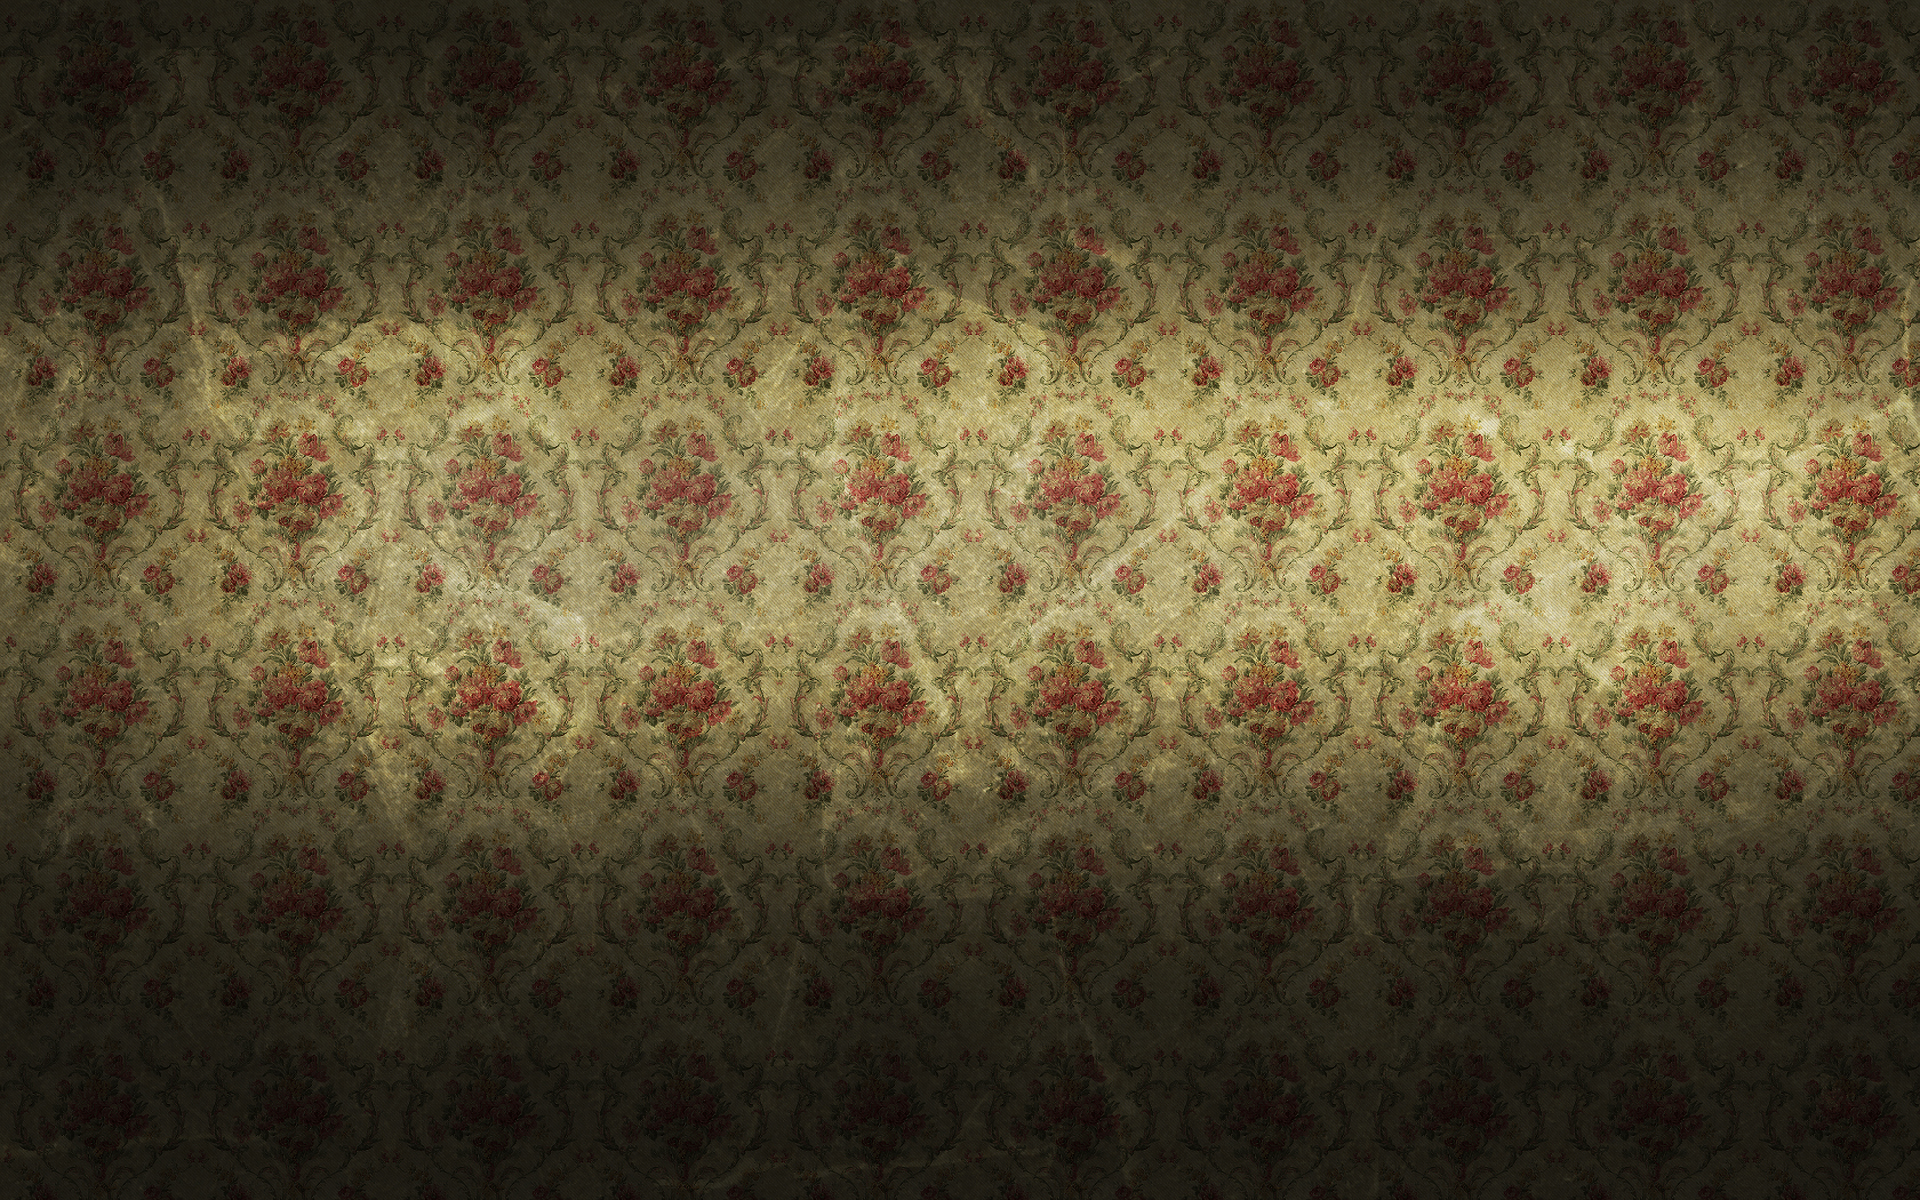 Historical patterned desktop wallpaper